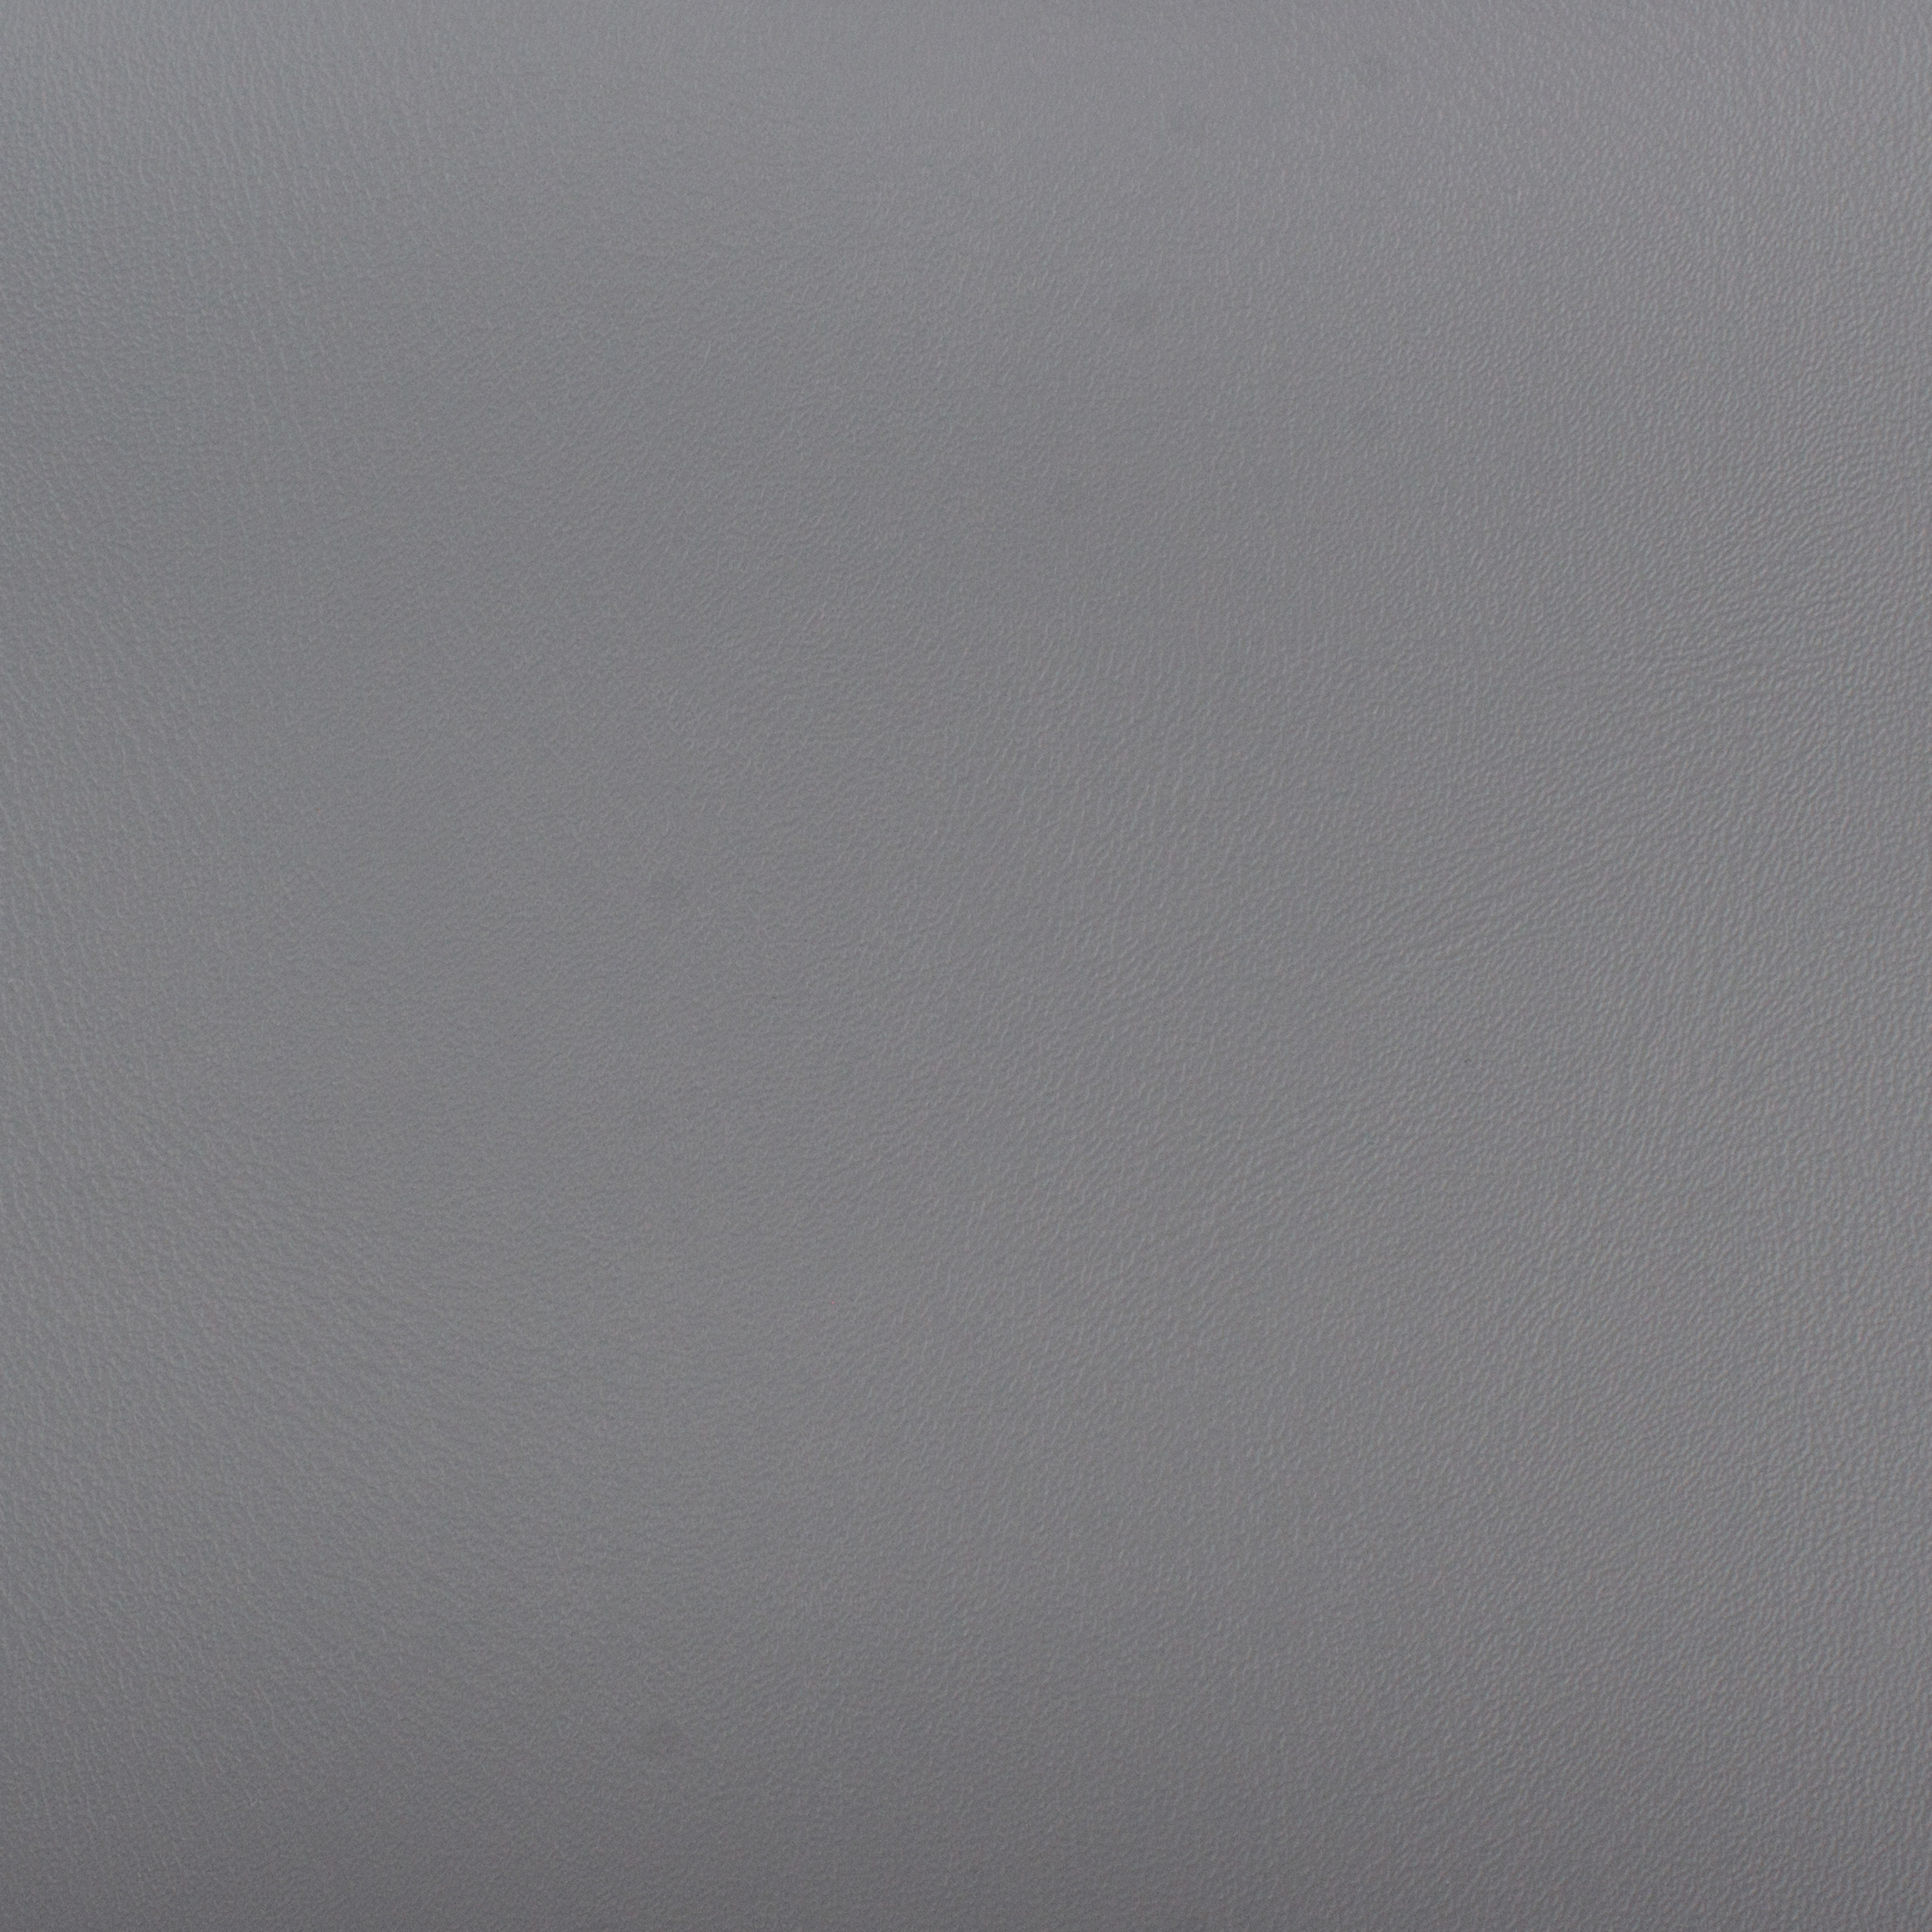 Babykörbchen 'groß', 110 x 70 x 20 cm, grau